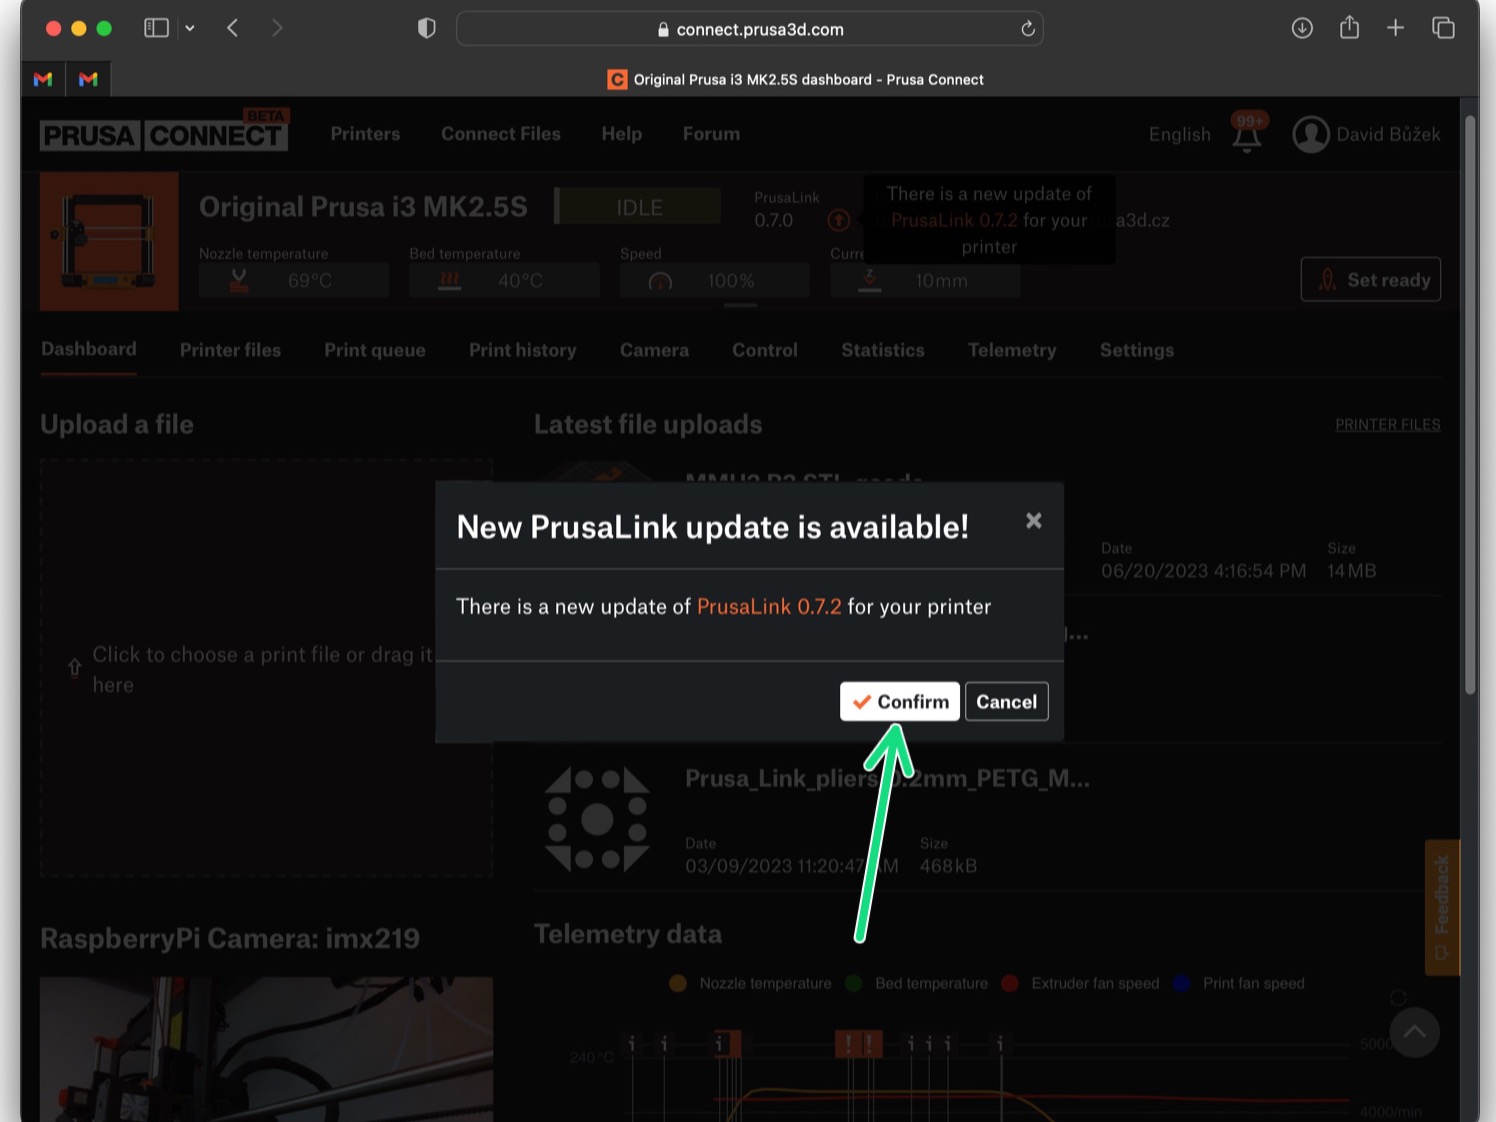 Actualización OTA de PrusaLink (en Prusa Connect)